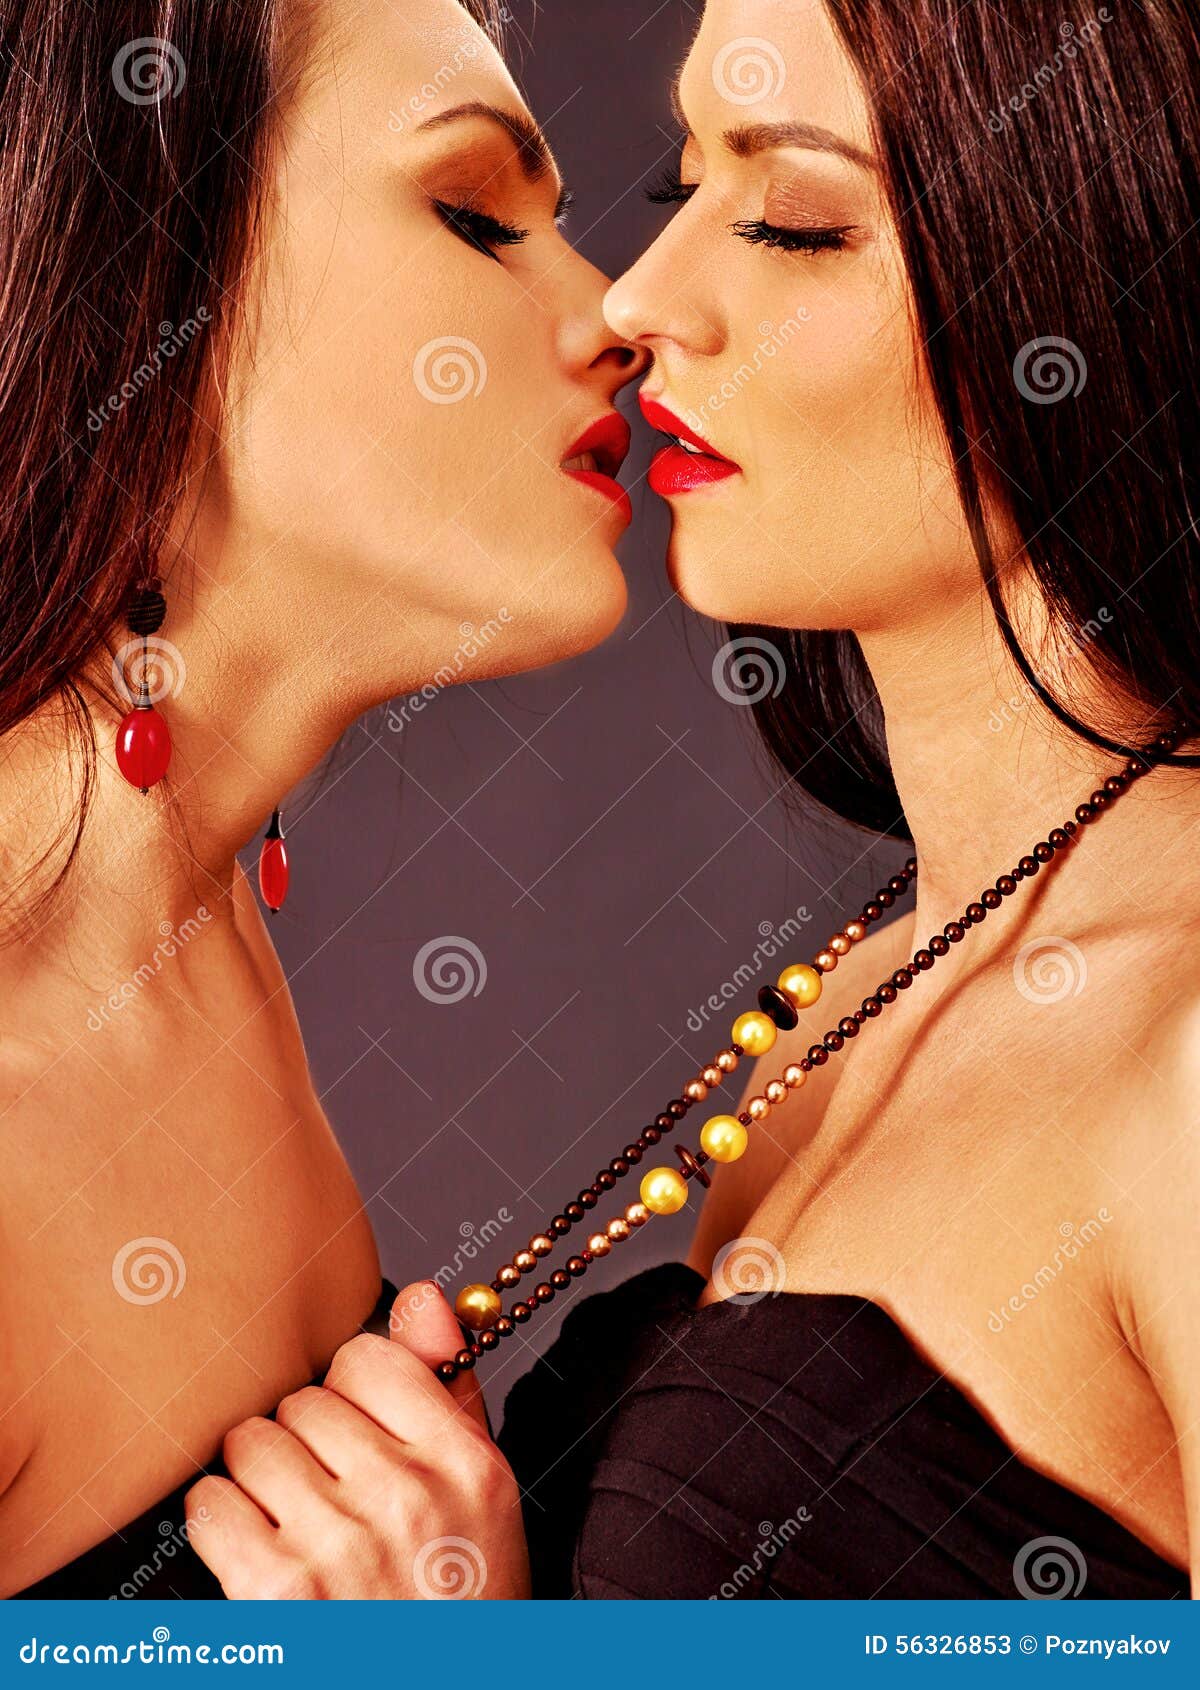 поцелуй женщины с женщиной лесби фото 116